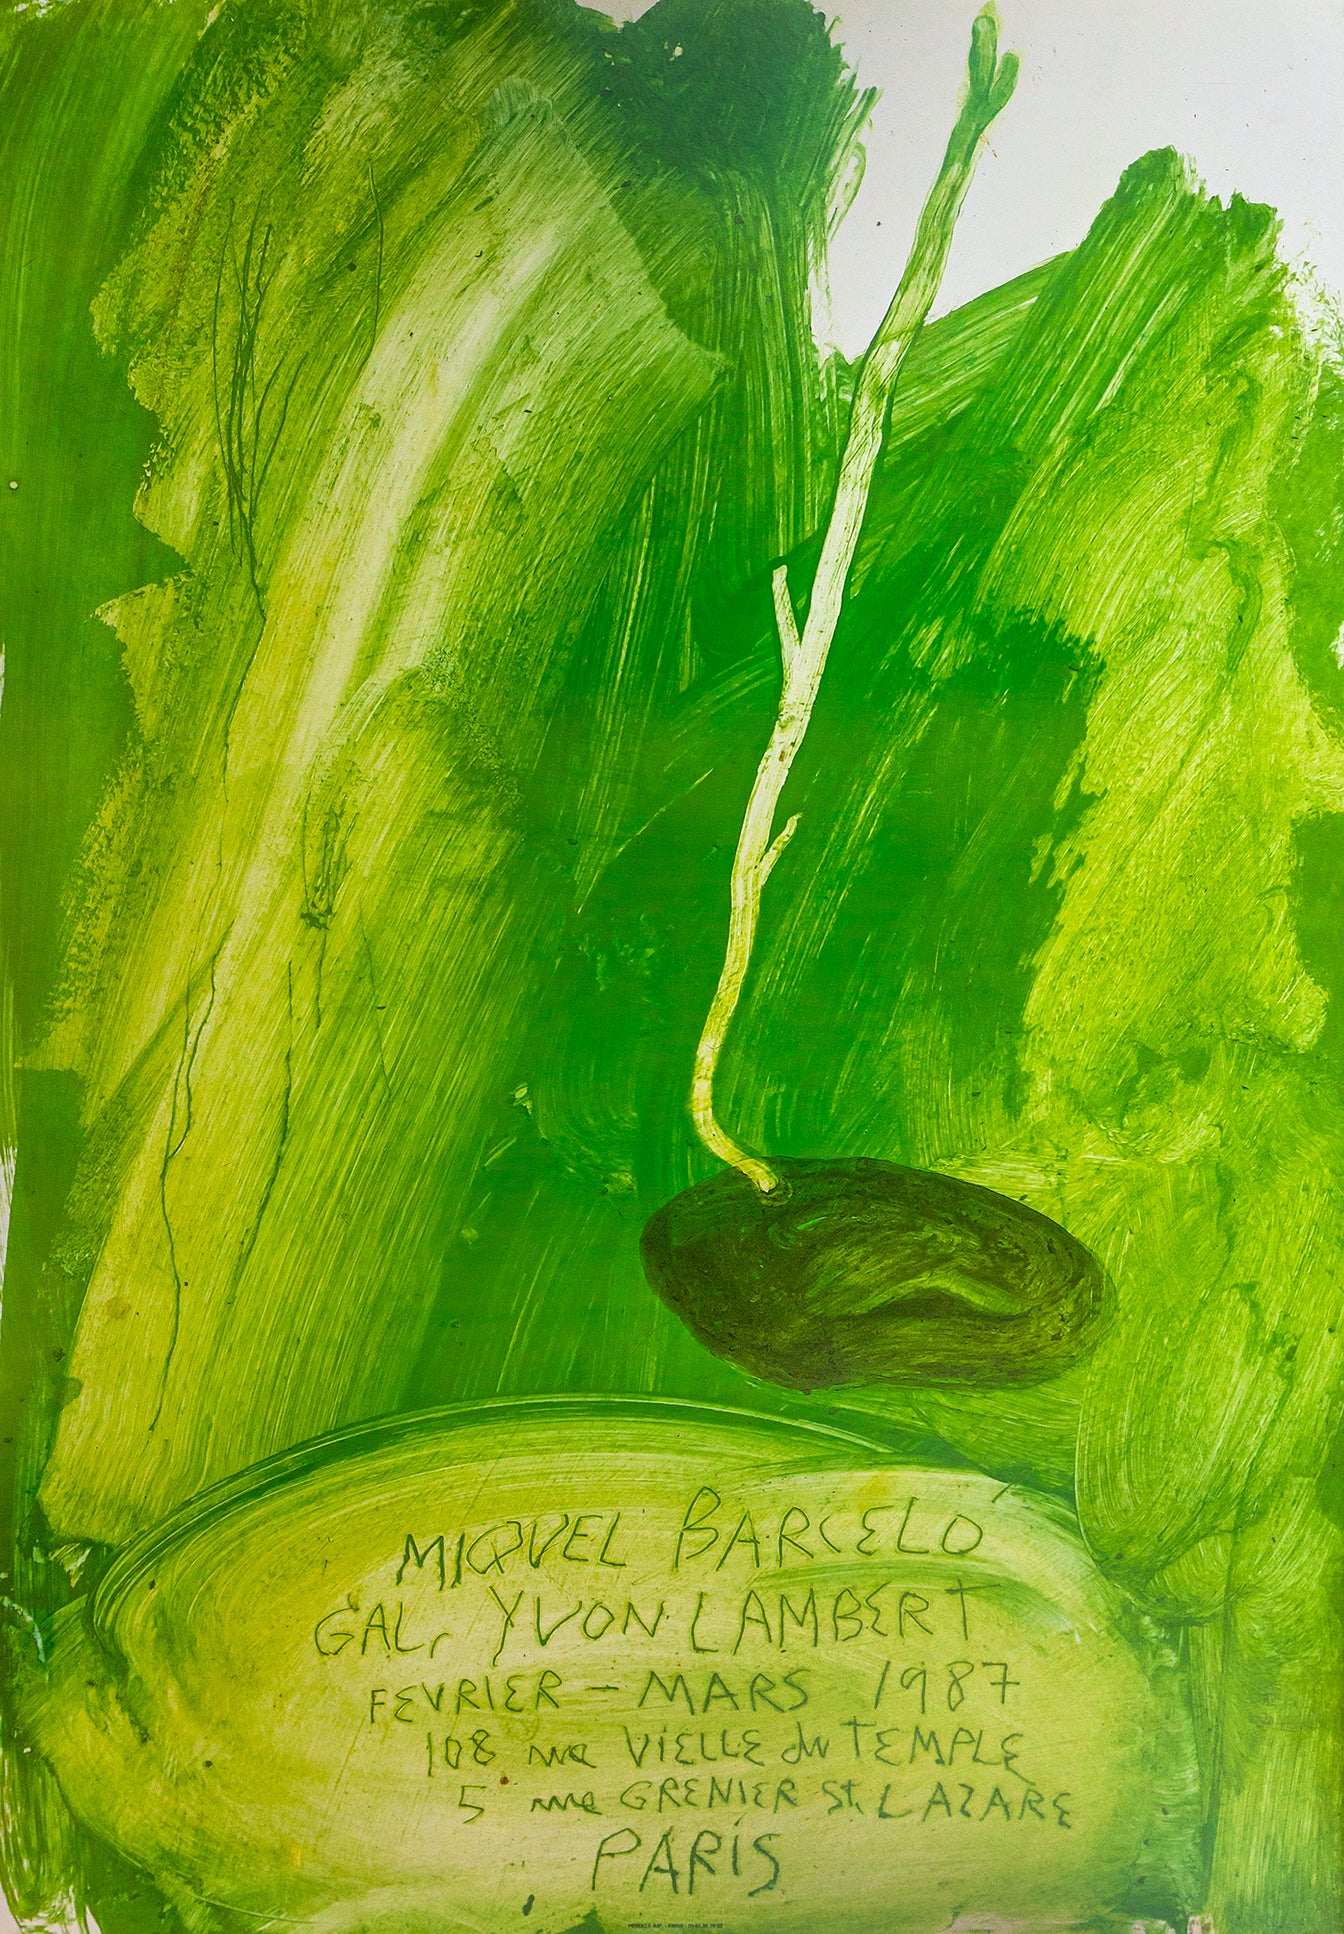 Miquel Barceló - Print (1987)